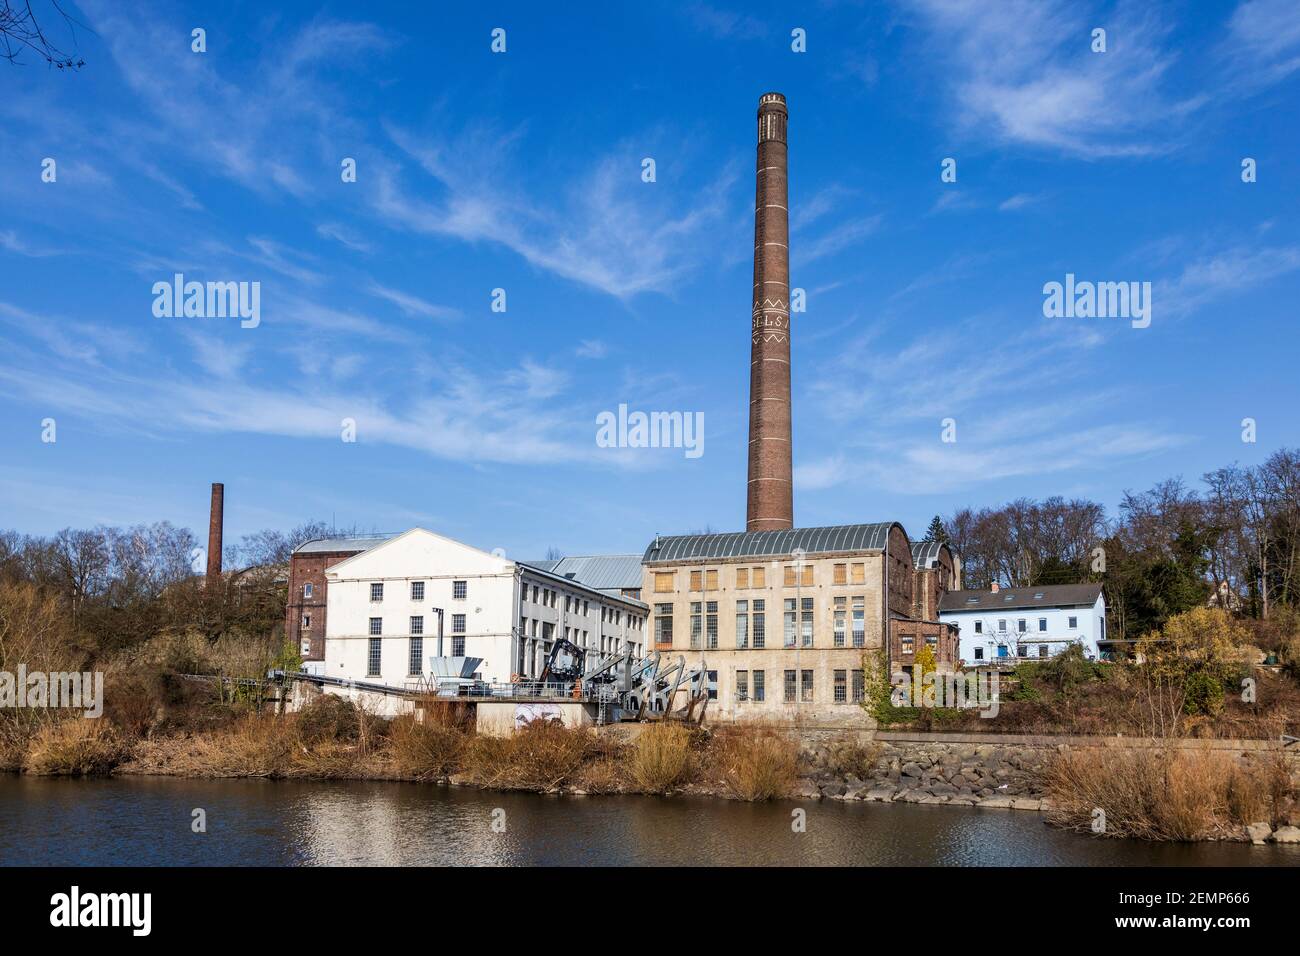 Centrale hydroélectrique Horster Mühle sur la Ruhr à Essen, Allemagne. Banque D'Images